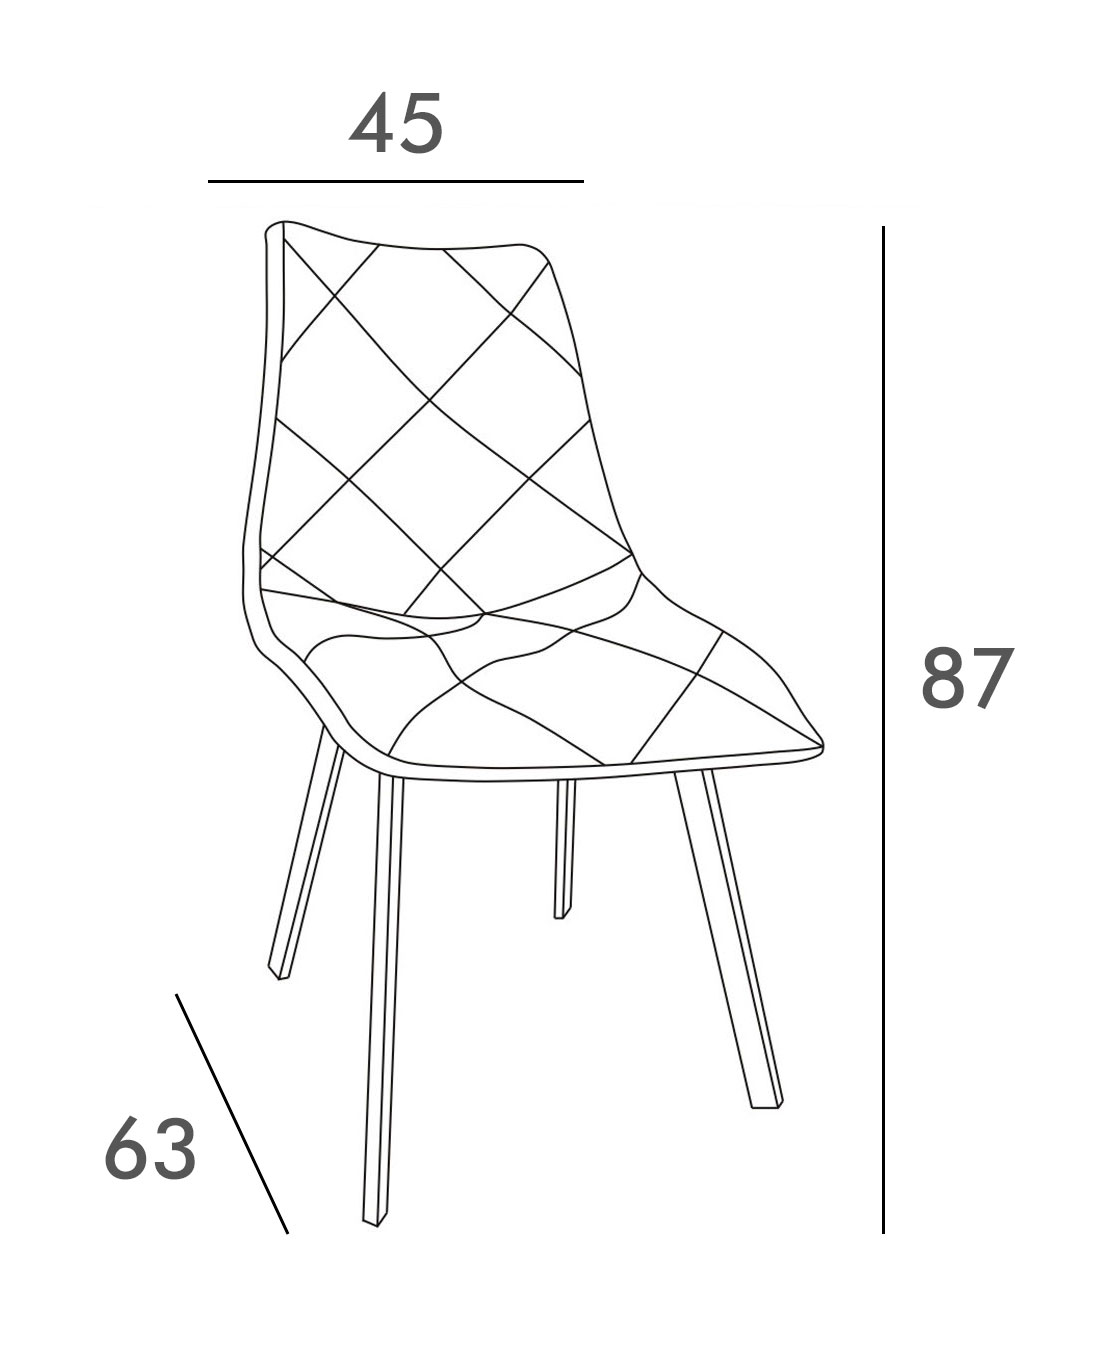 Medidas de la silla tapizada Diamante de Adec